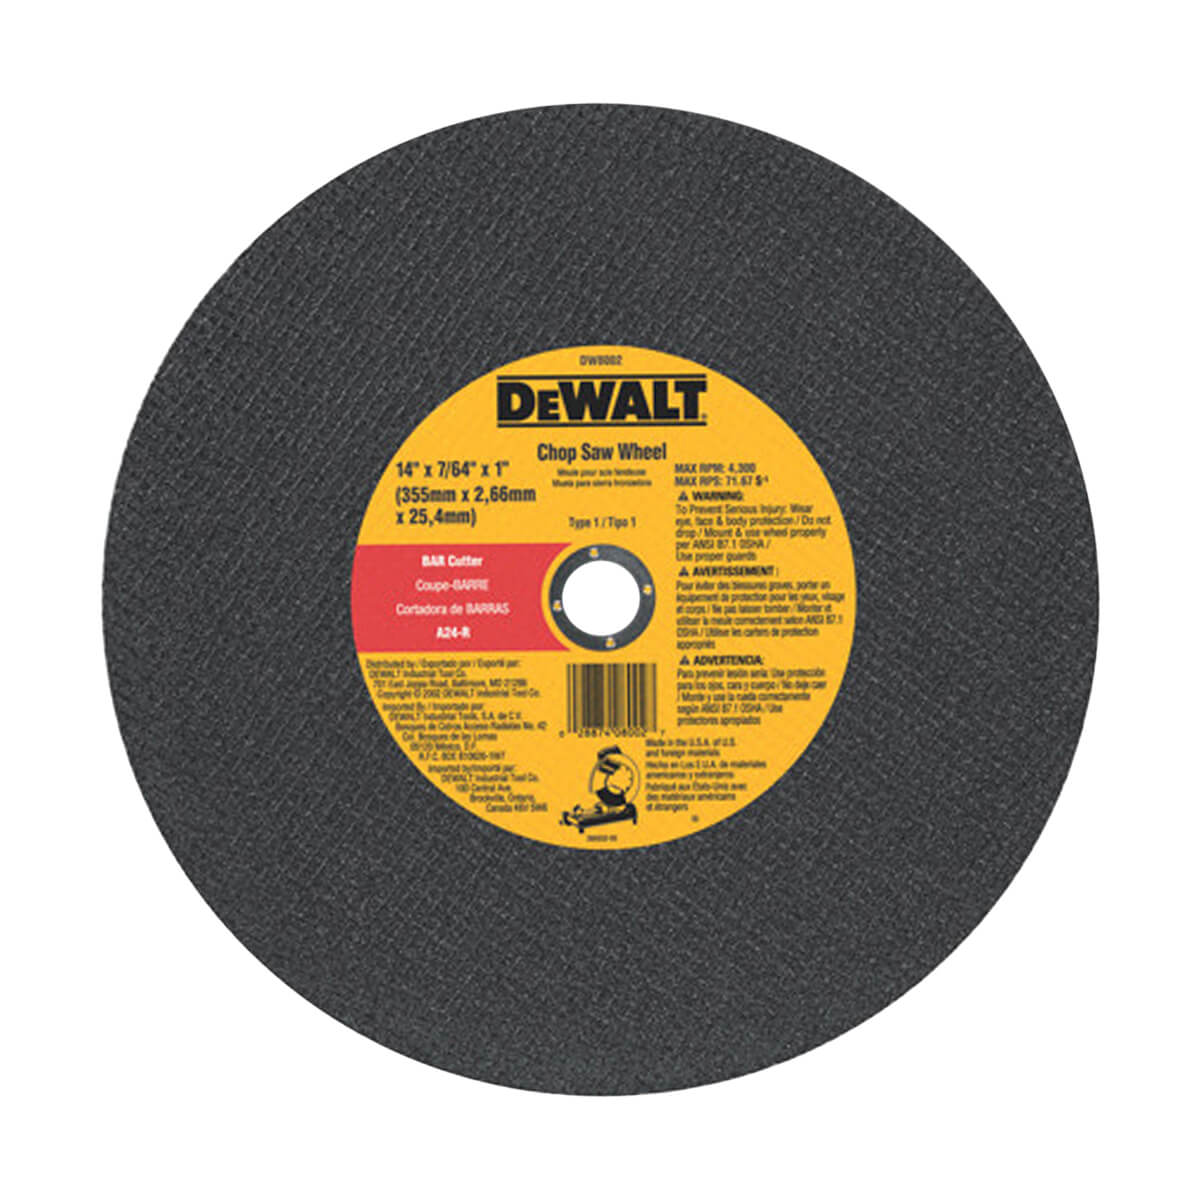 DEWALT DW8002 14-in x 3/32-in Bar Cutter Chop Saw Wheel